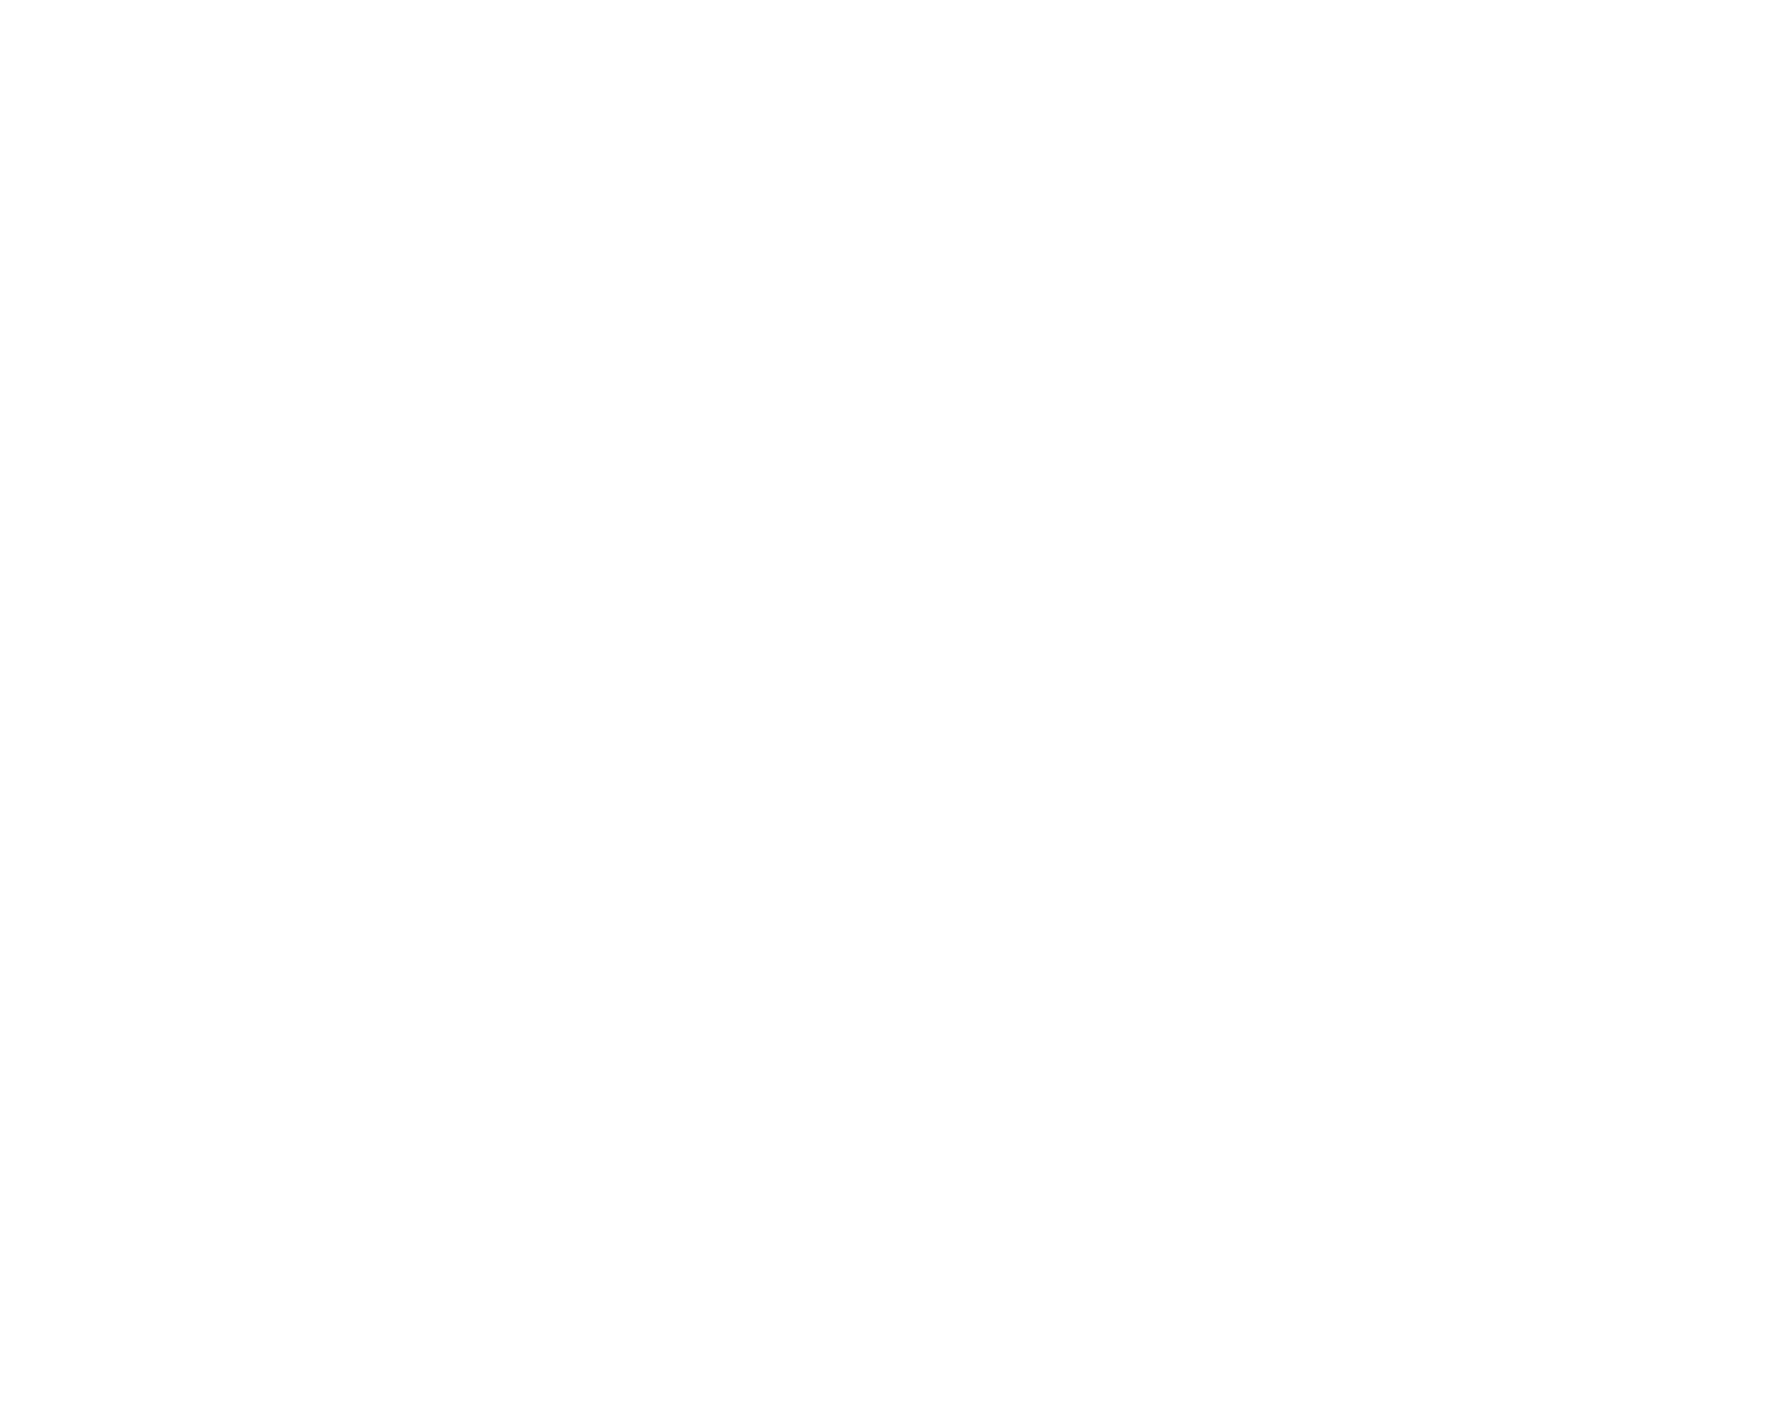 Concordia Vertical White logo